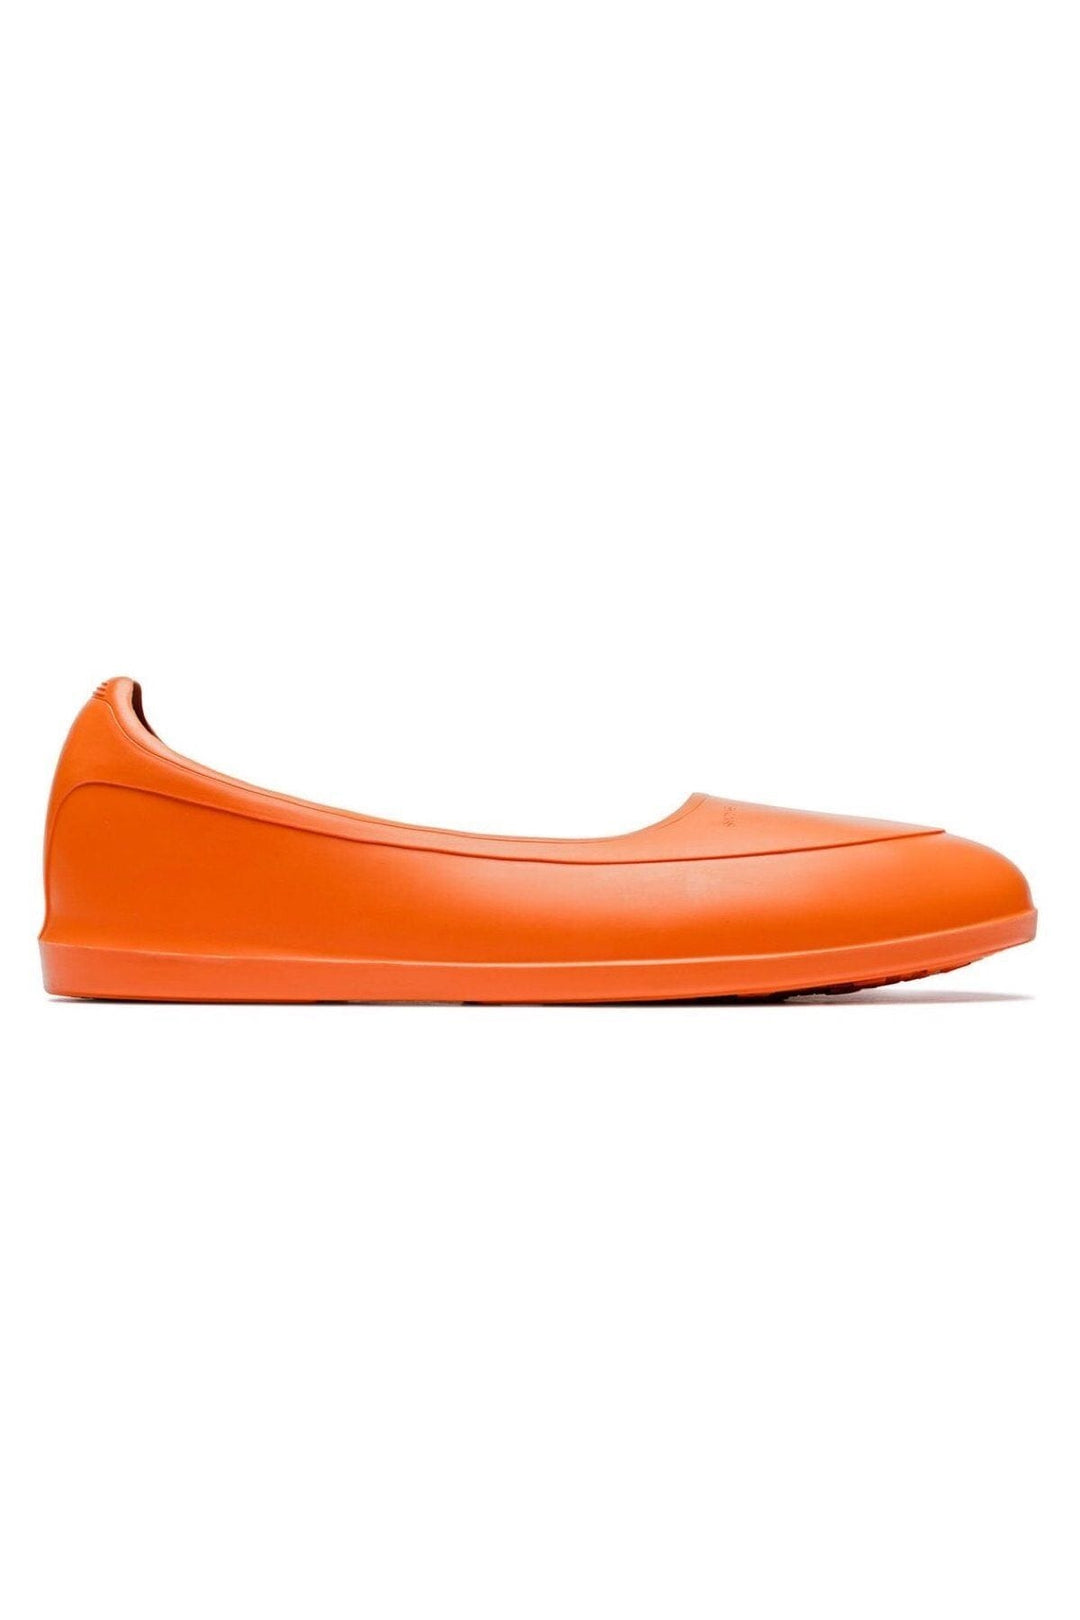 Galoche orange Homme - Chaussures - Galoches Swims